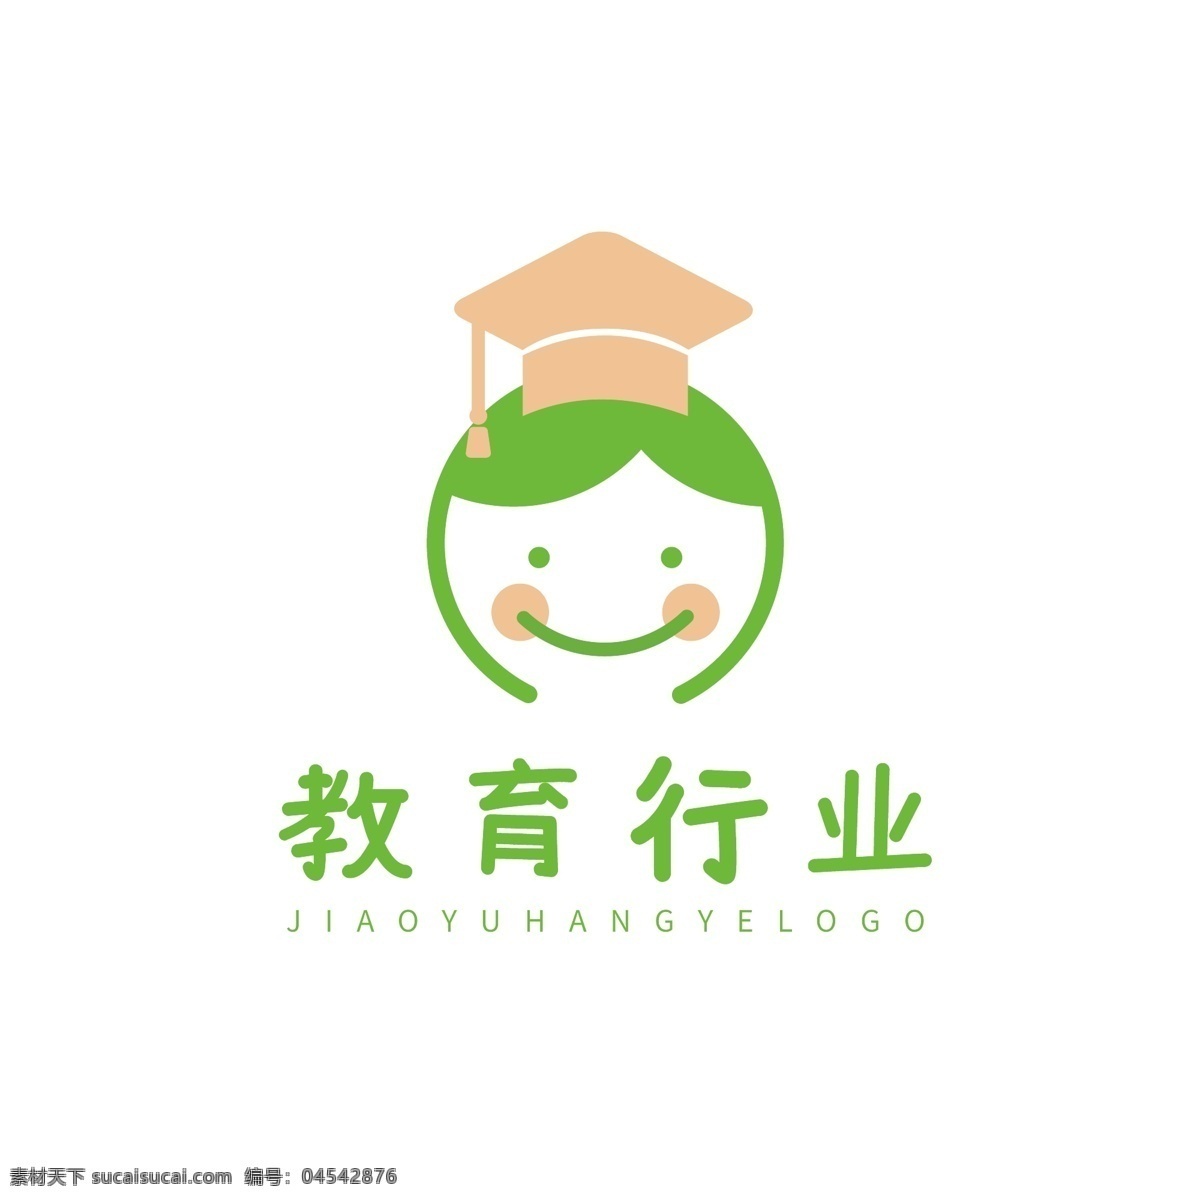 儿童教育 行业 logo 教育行业 幼儿园 互联网 标志 教育培训机构